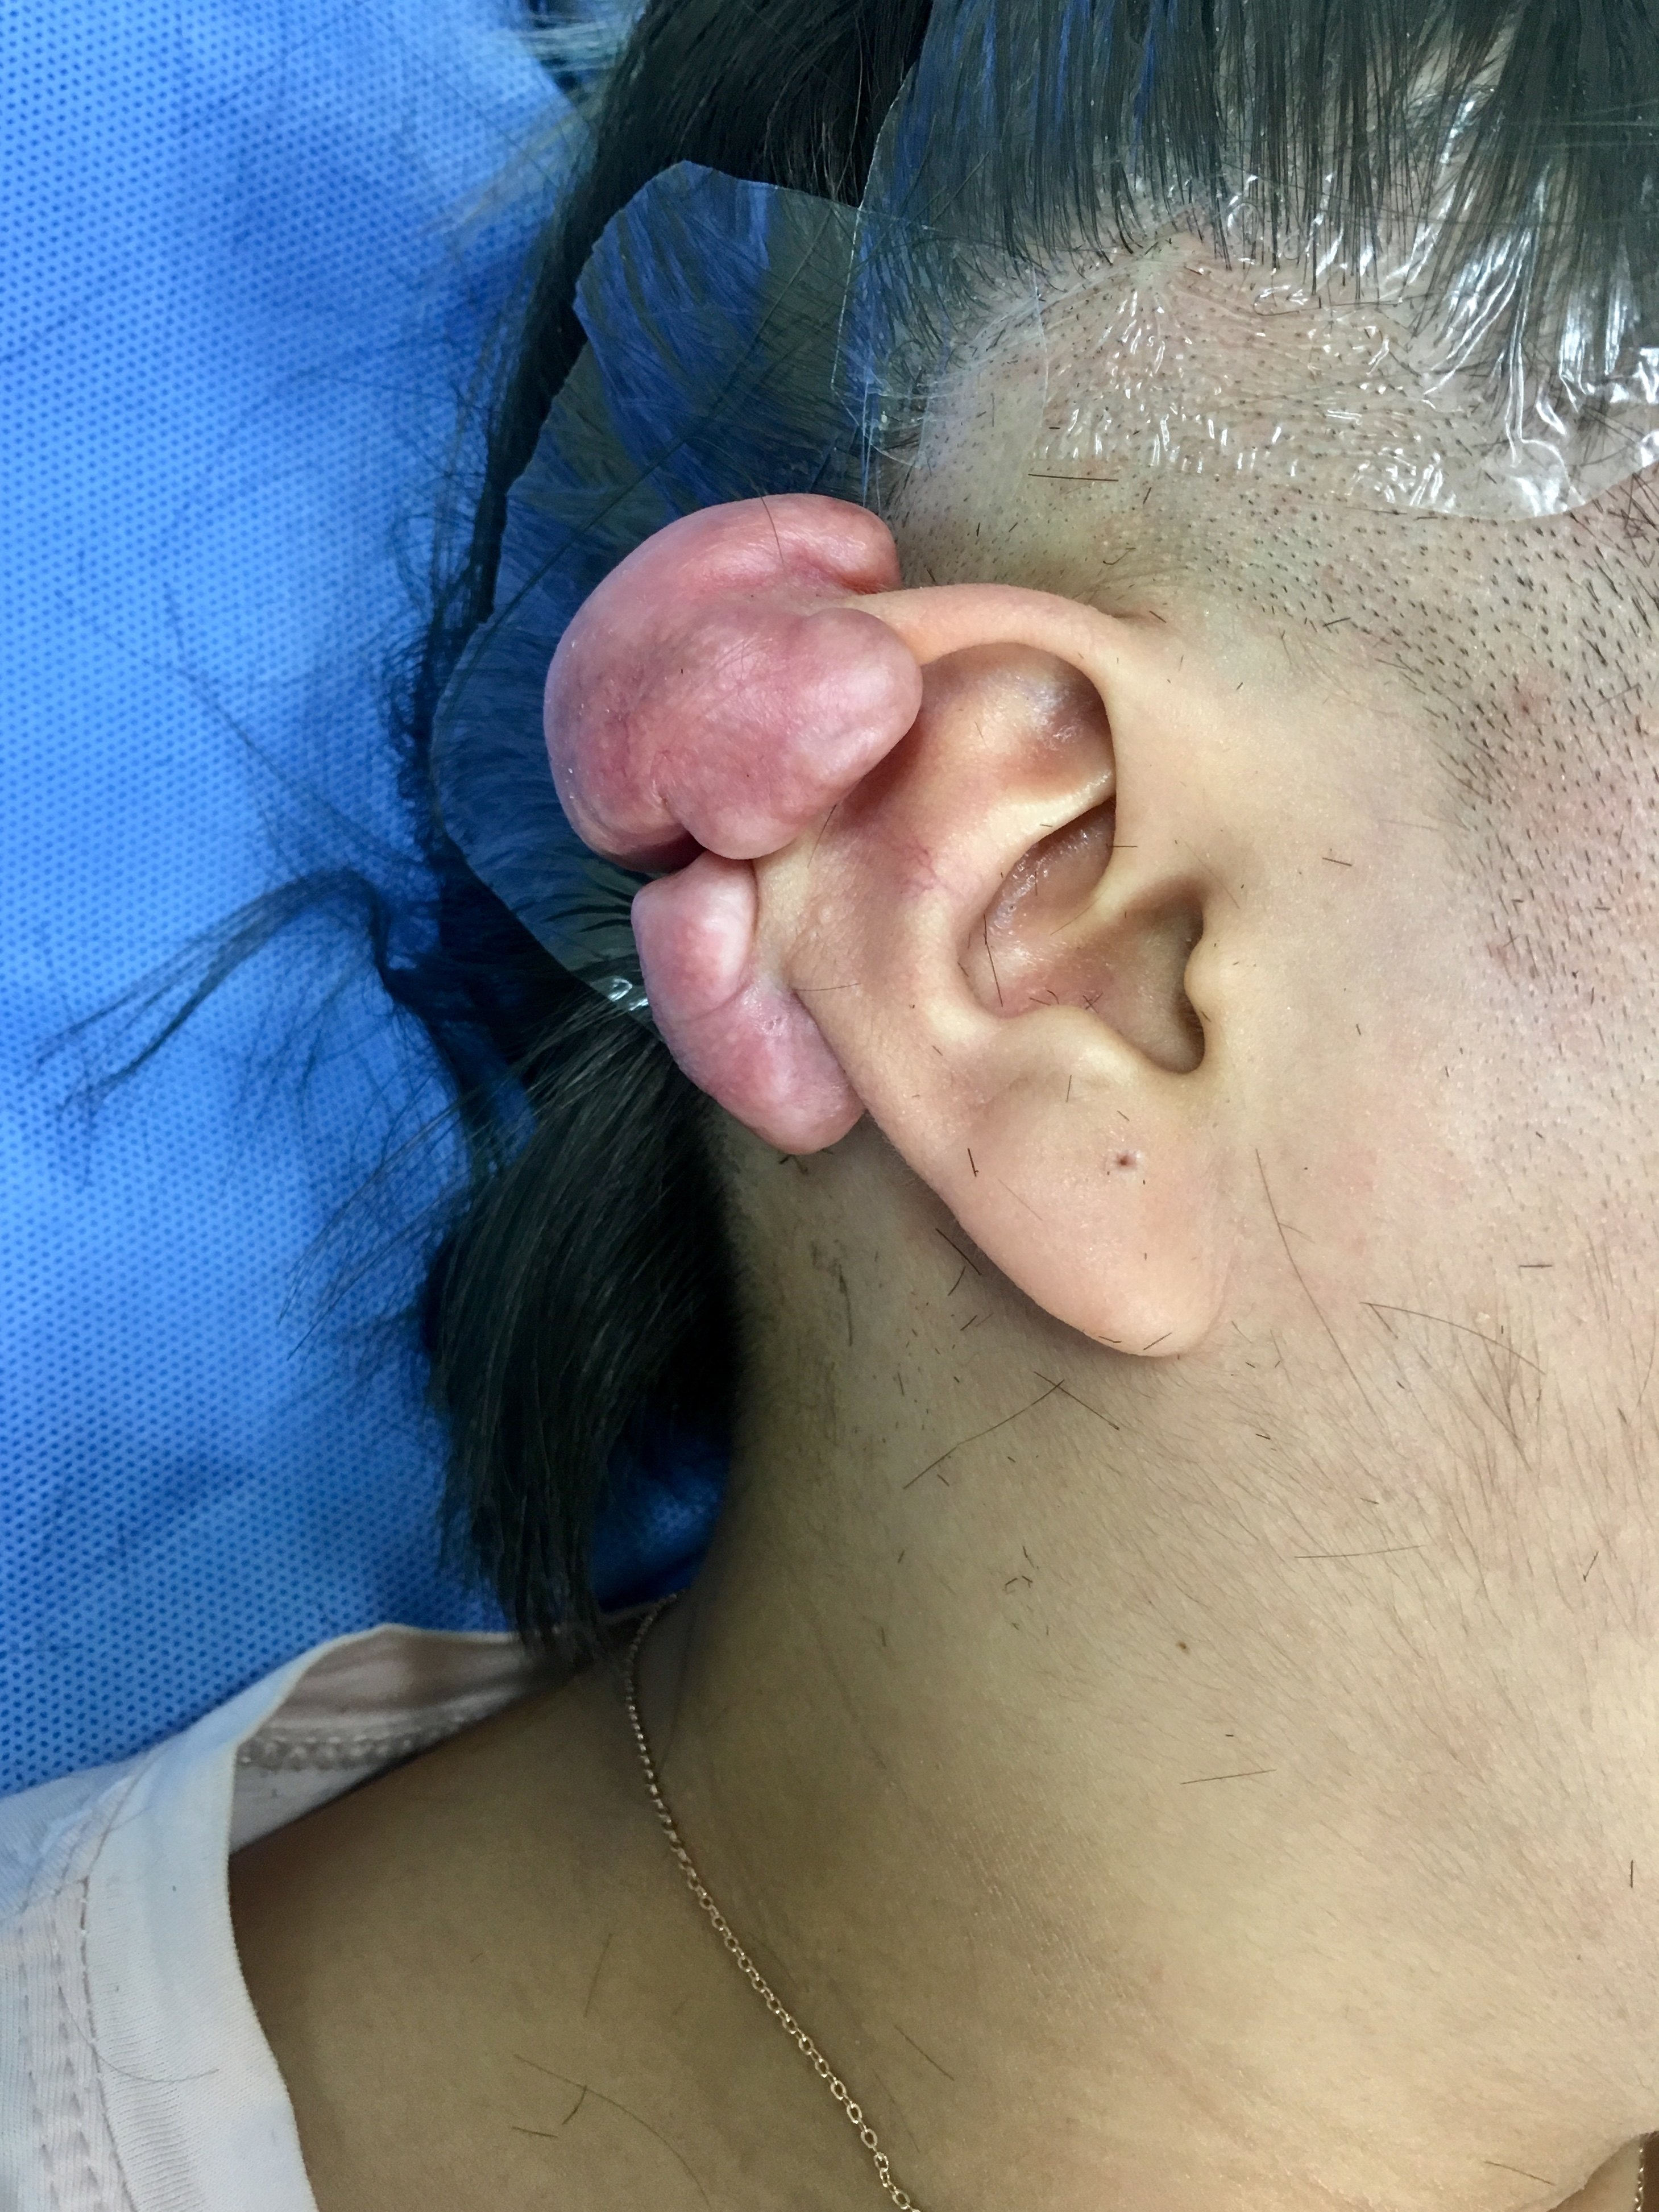 难治性双侧耳廓瘢痕疙瘩的手术治疗 (原创)